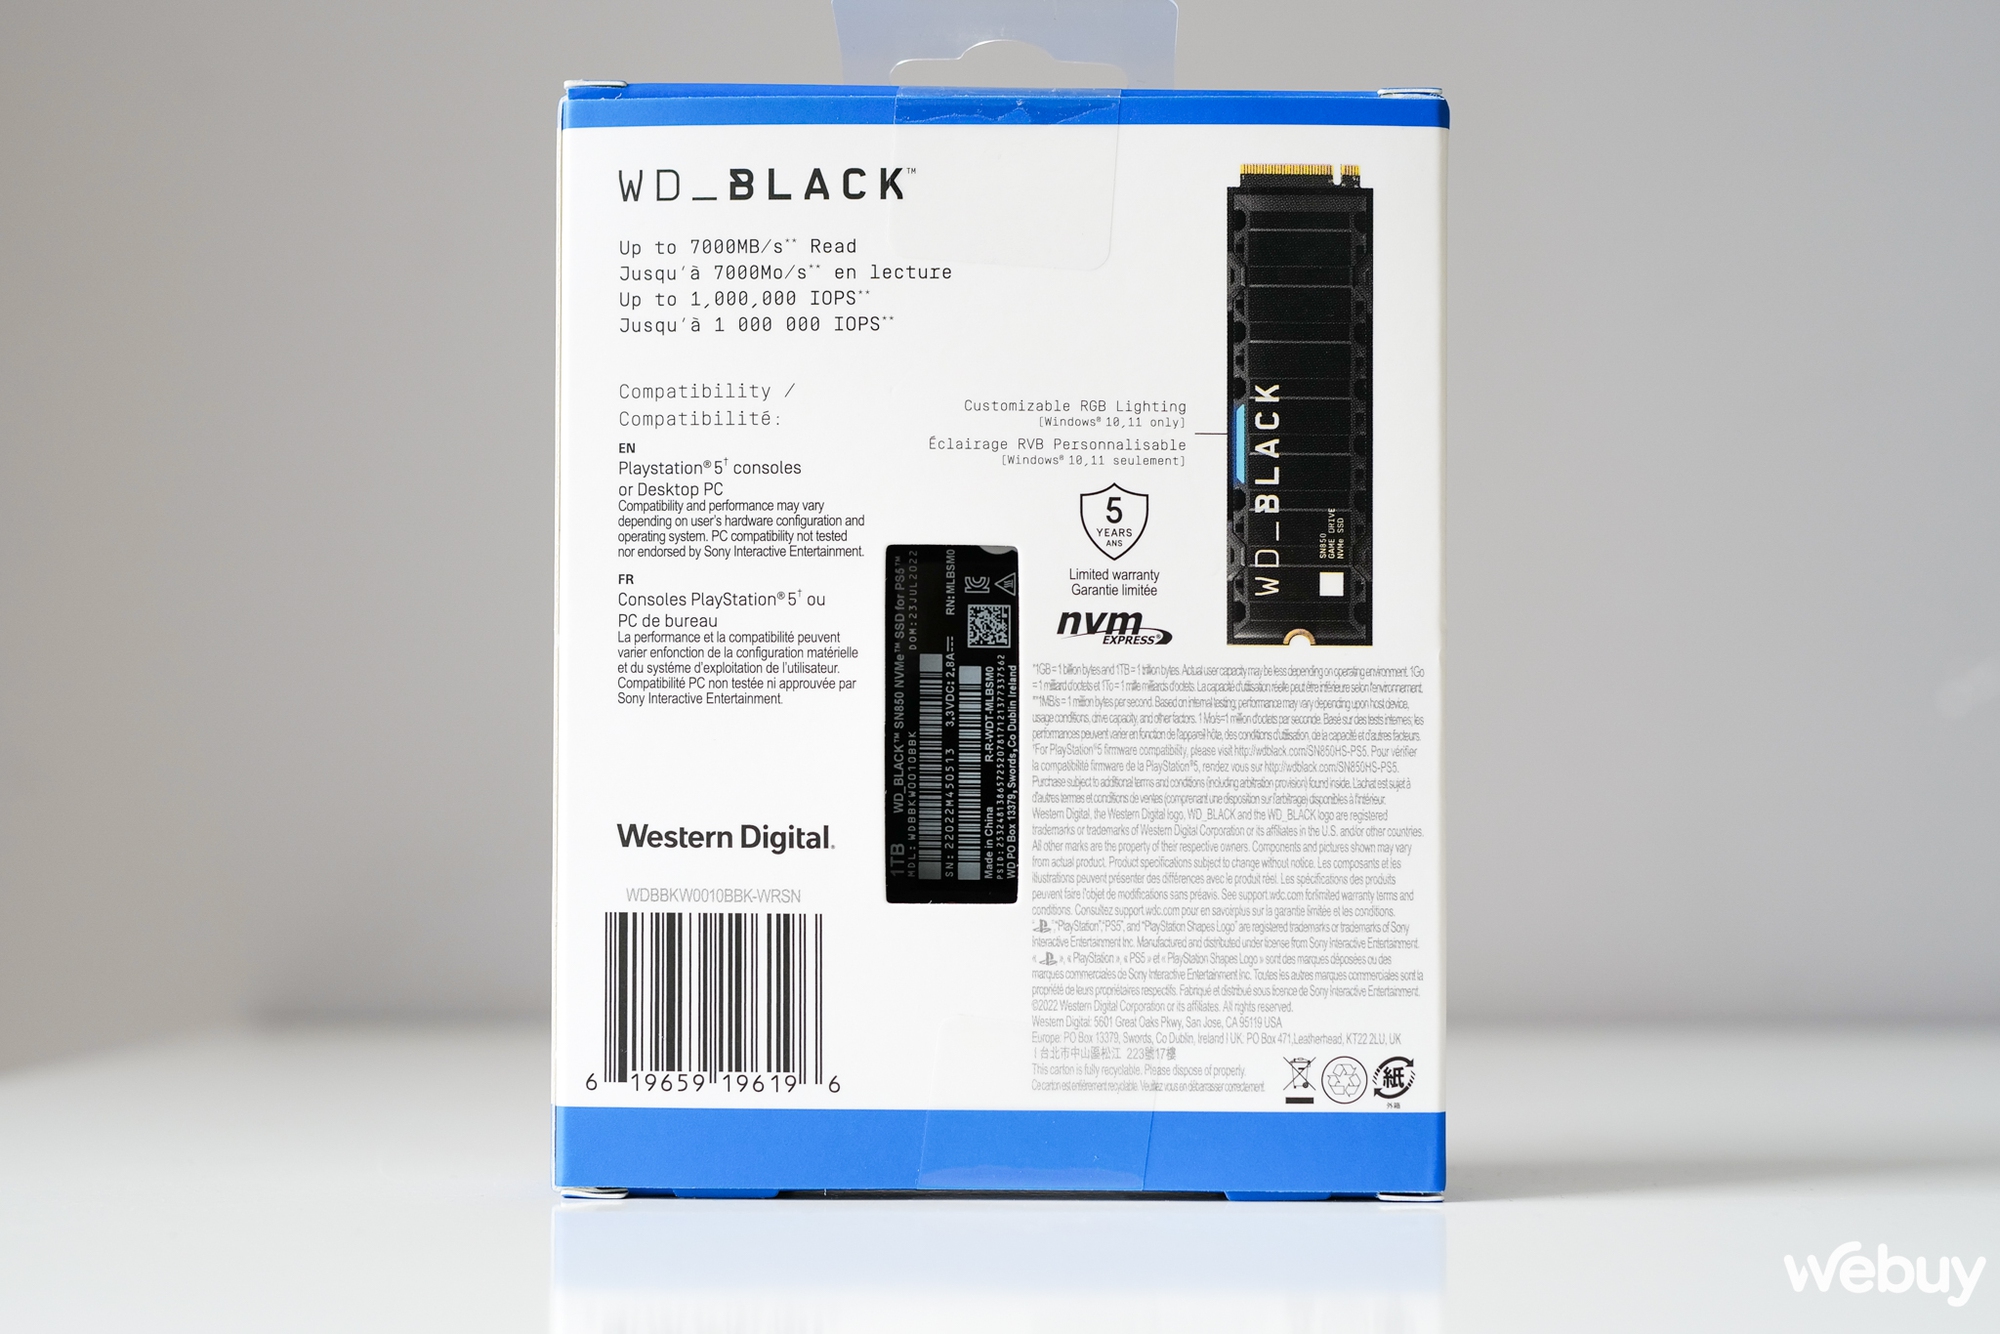 Đánh giá nhanh ổ cứng SSD NVMe WD_BLACK SN850 dành cho PS5: Vẫn thuộc hàng đầu bảng nhưng được dán thêm logo PlayStation trên hộp - Ảnh 3.